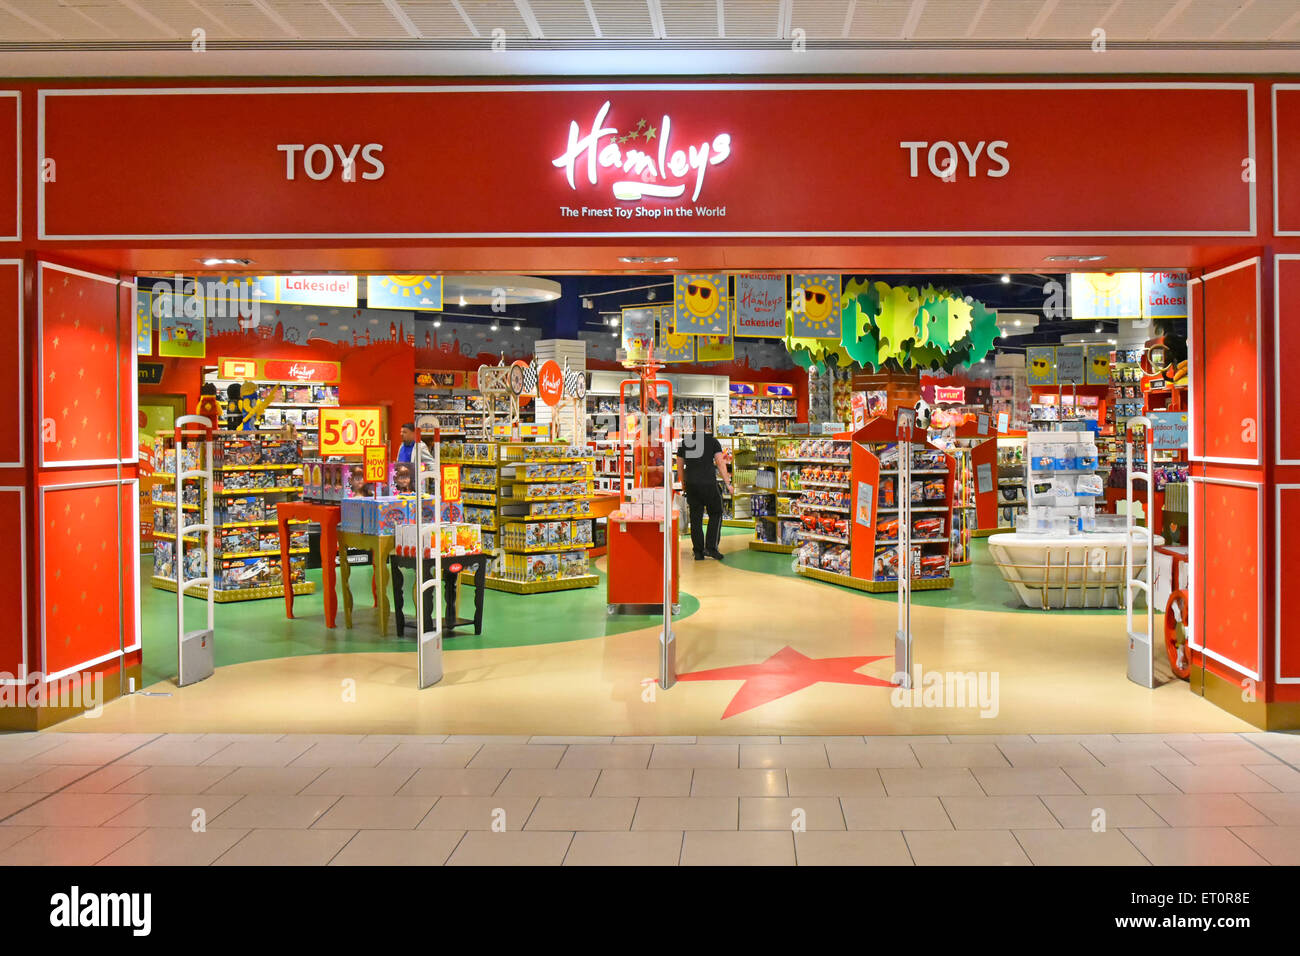 Hamleys negozio di giocattoli parte interna della famosa catena di giocattoli con sede a Londra nel centro commerciale al coperto Intu Lakeside a West Thurrock, nell'Essex, Inghilterra, Regno Unito Foto Stock